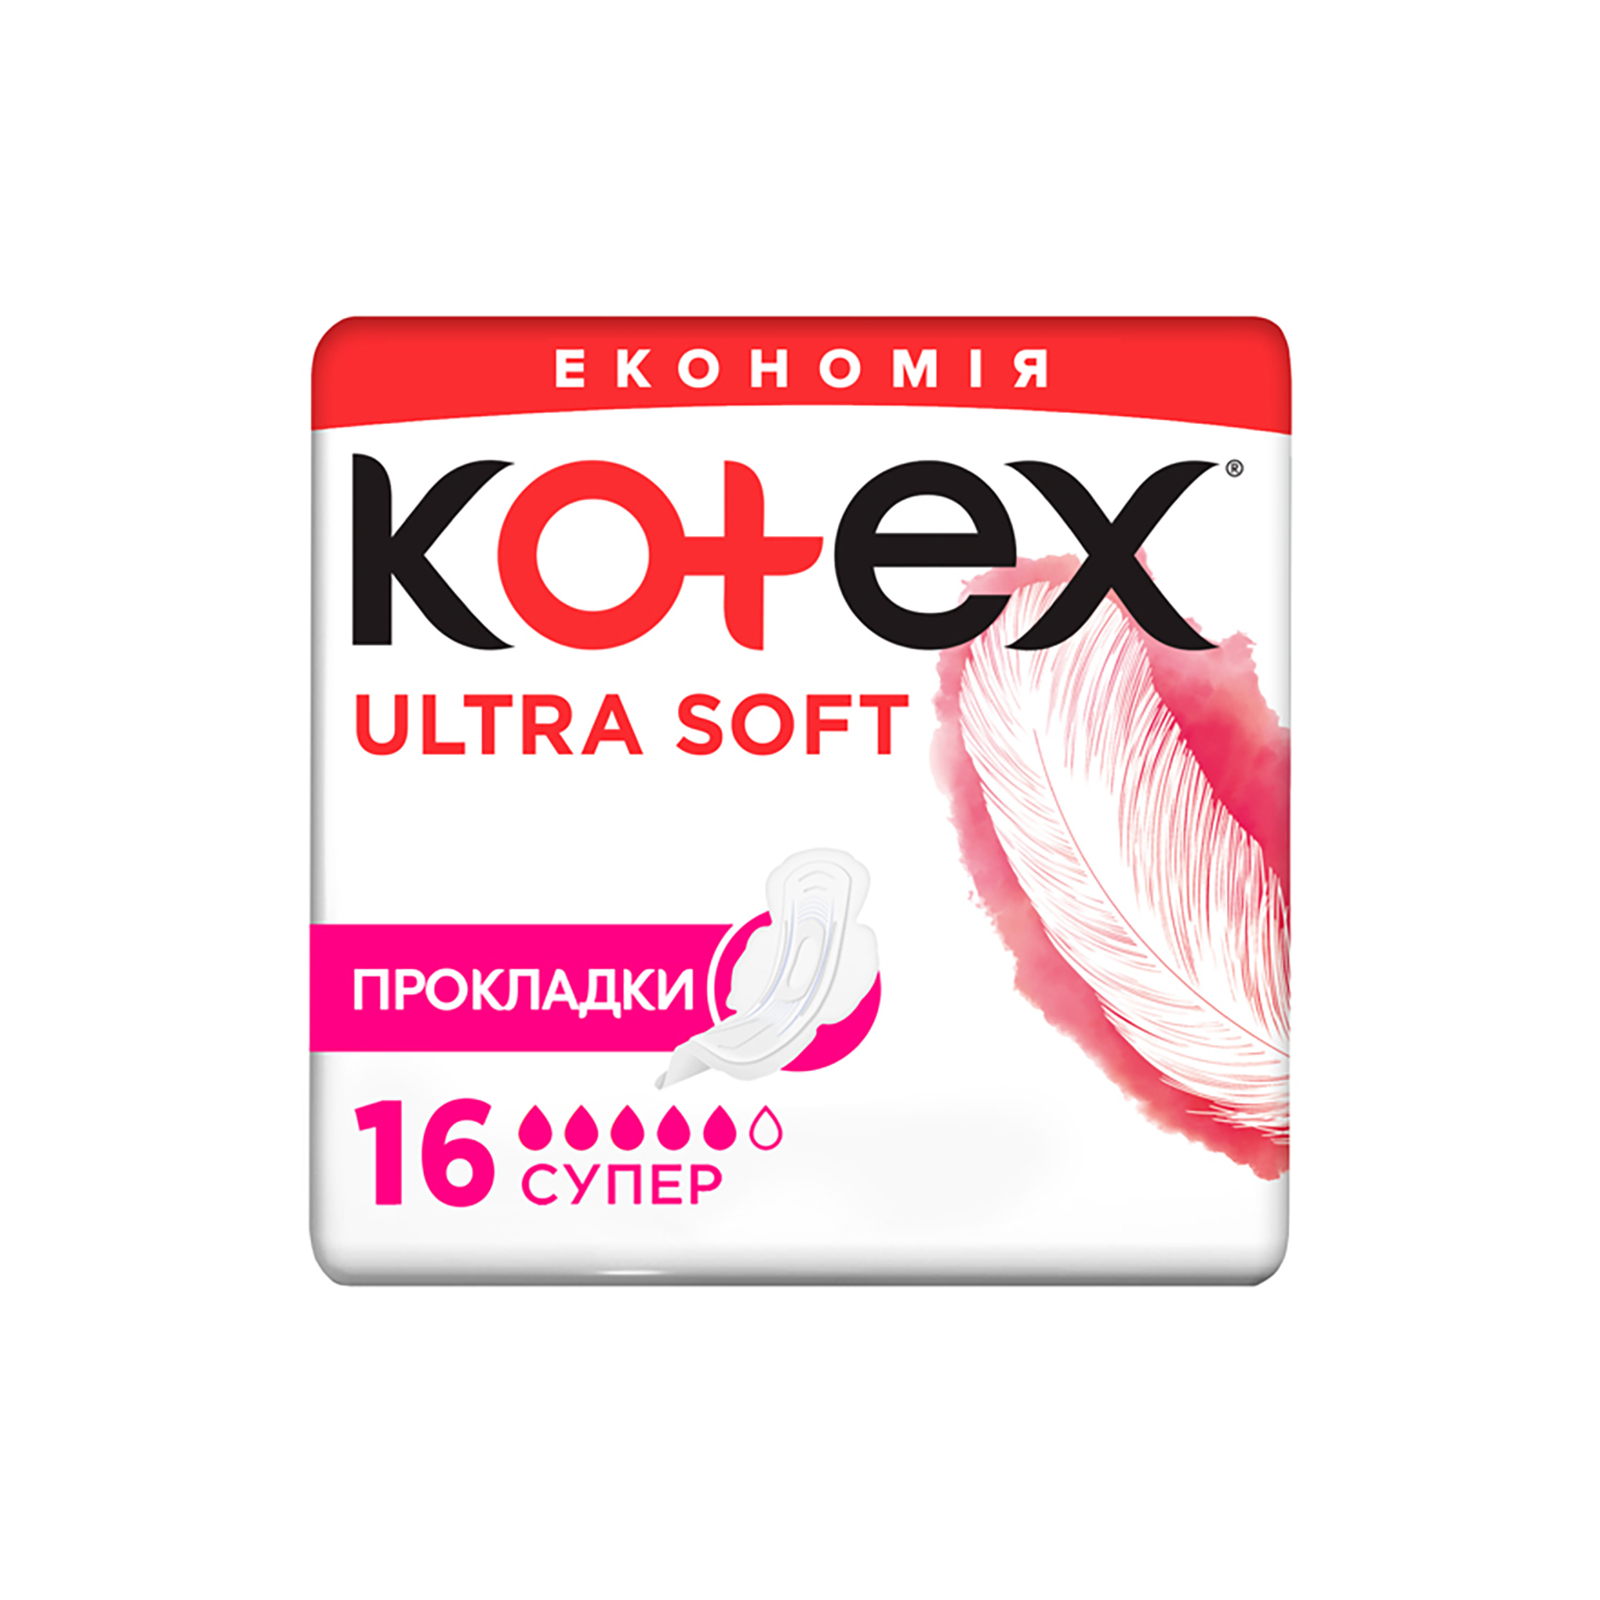 Гигиенические прокладки Kotex Ultra Soft Super 8 шт. (5029053542683)